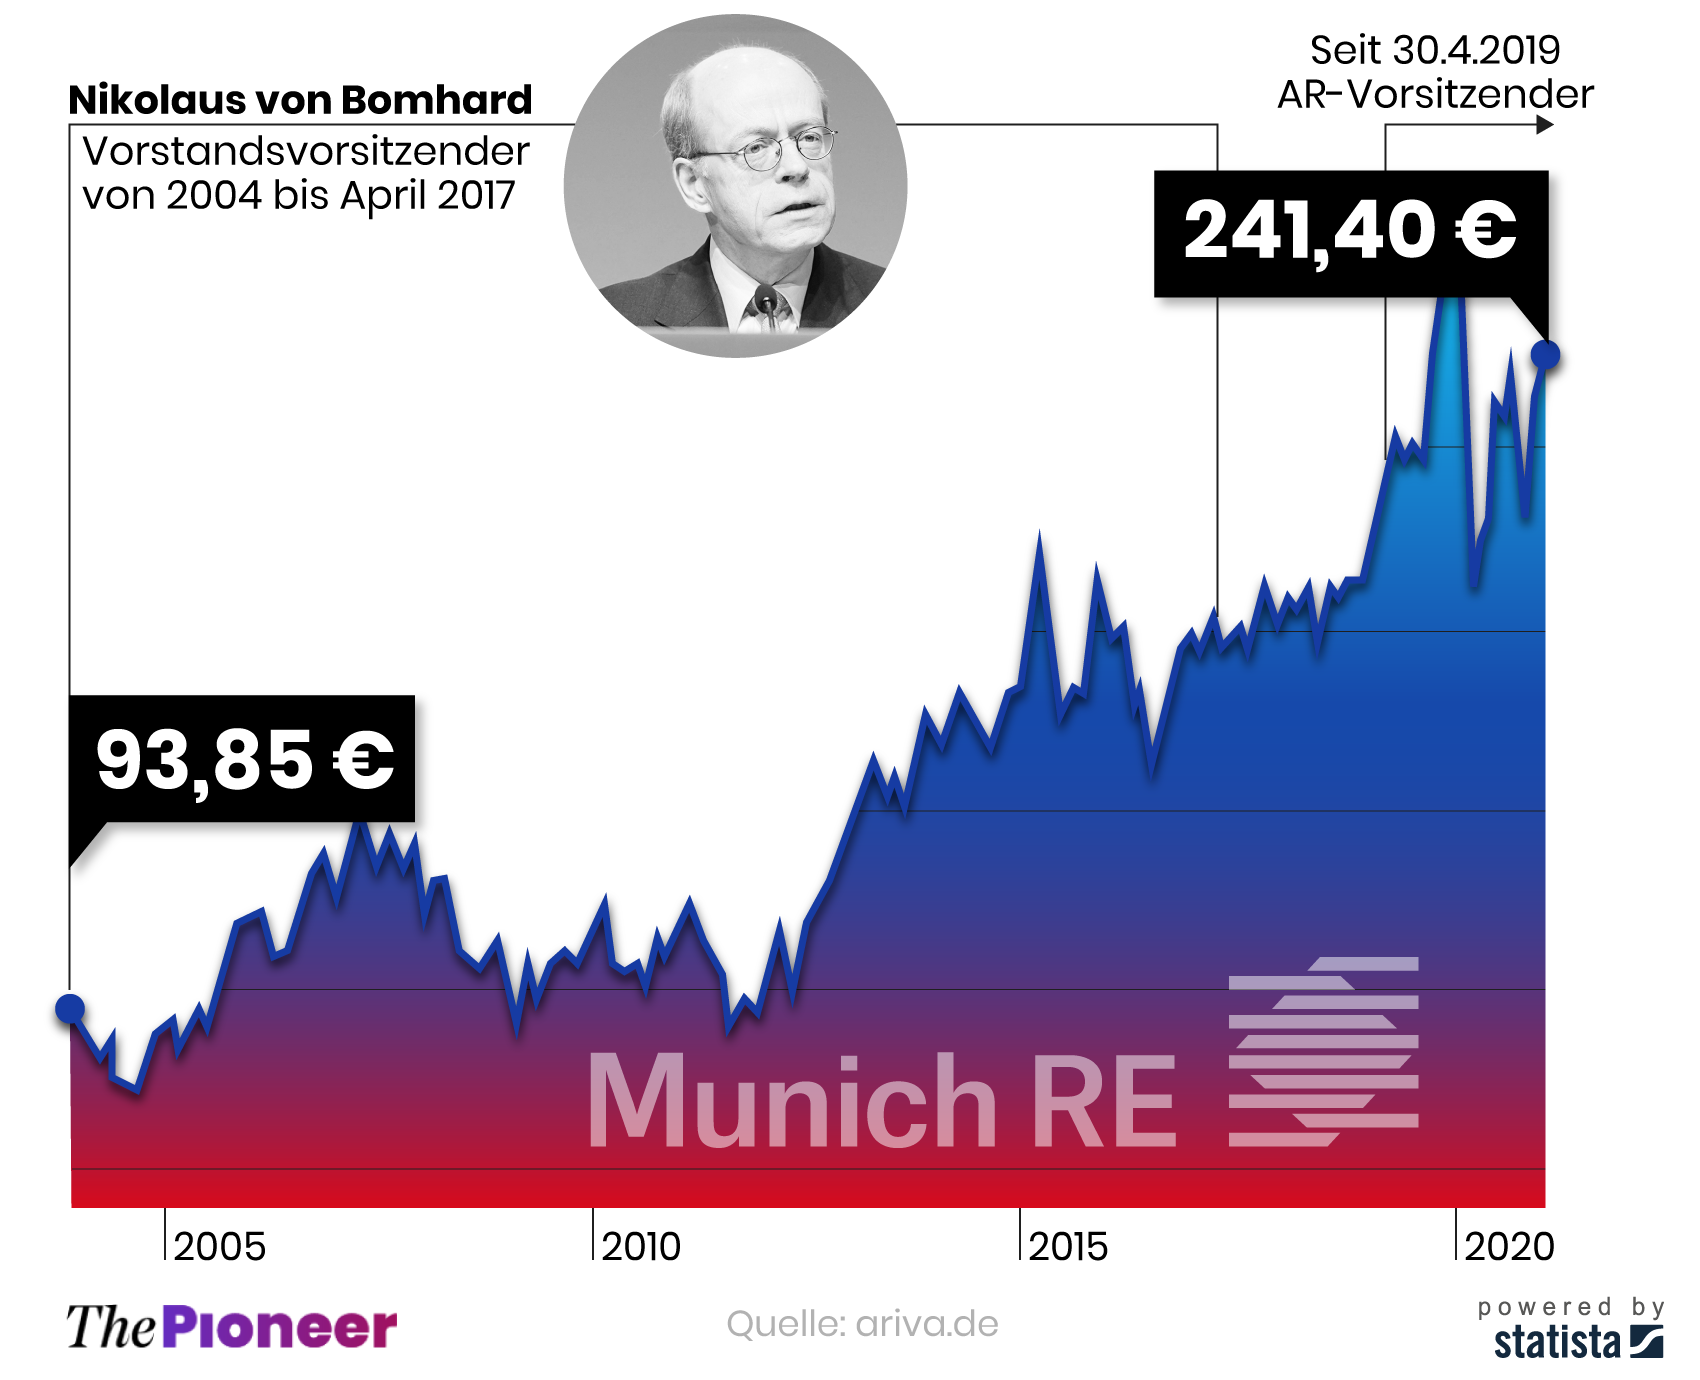 Aktienverlauf seit Amtsantritt von von Bomhard, in Euro